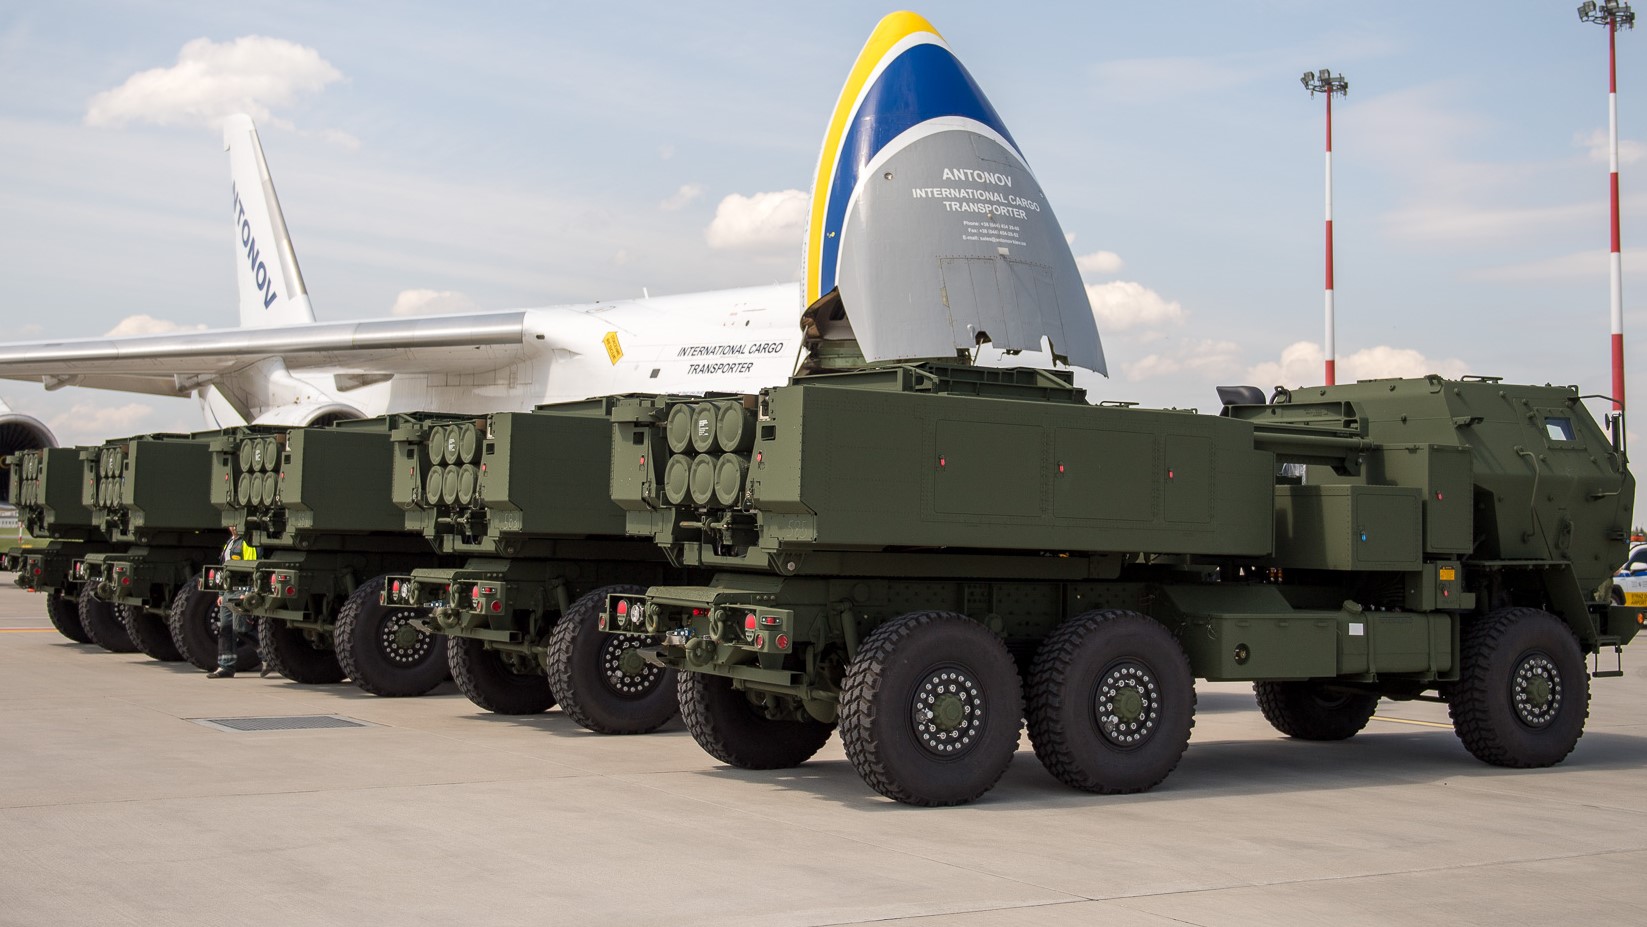 Ukrainische AN-124-Flugzeuge liefern erste HIMARS an Polen - Auftrag im Wert von 655 Millionen Dollar umfasst 20 Raketensysteme, 30 ATACMS und 270 GMLRS-Granaten